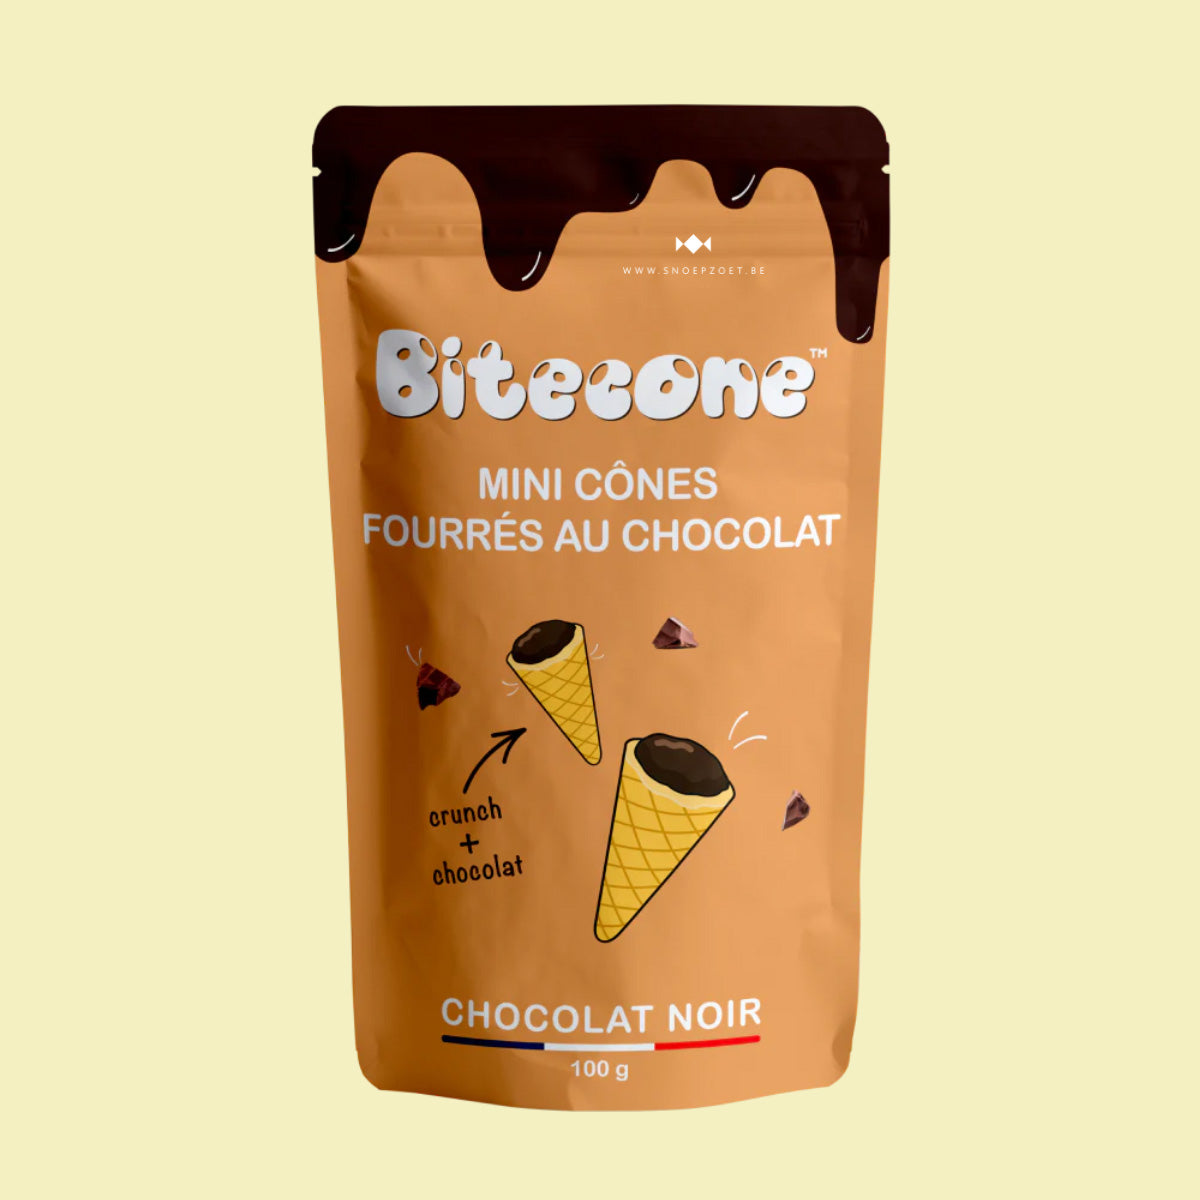 Bitecone: Pure chocolade